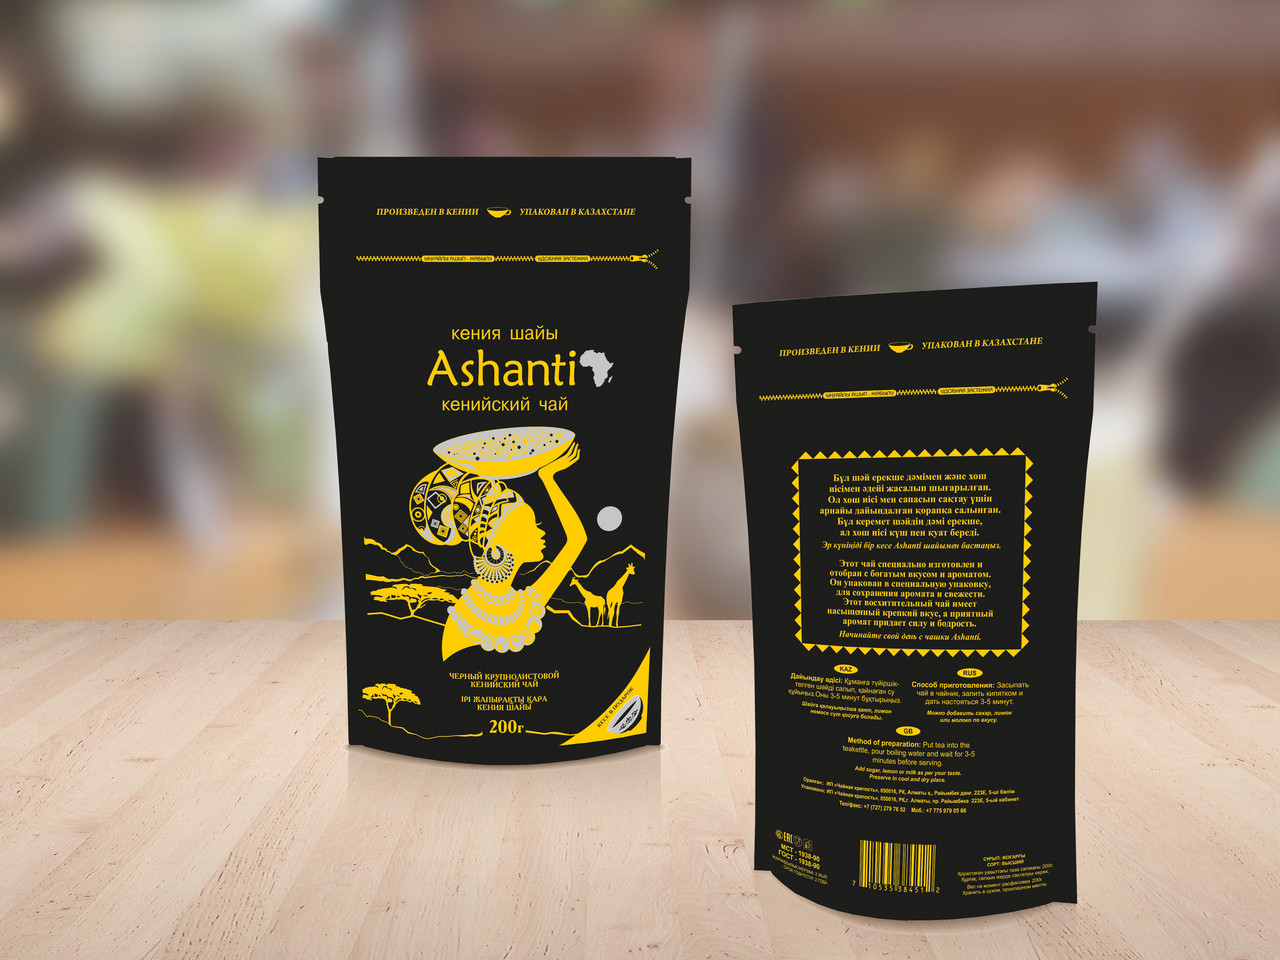 Кенийский черный листовой чай "Ashanti" (Ашанти) 200 гр пиалка внутри